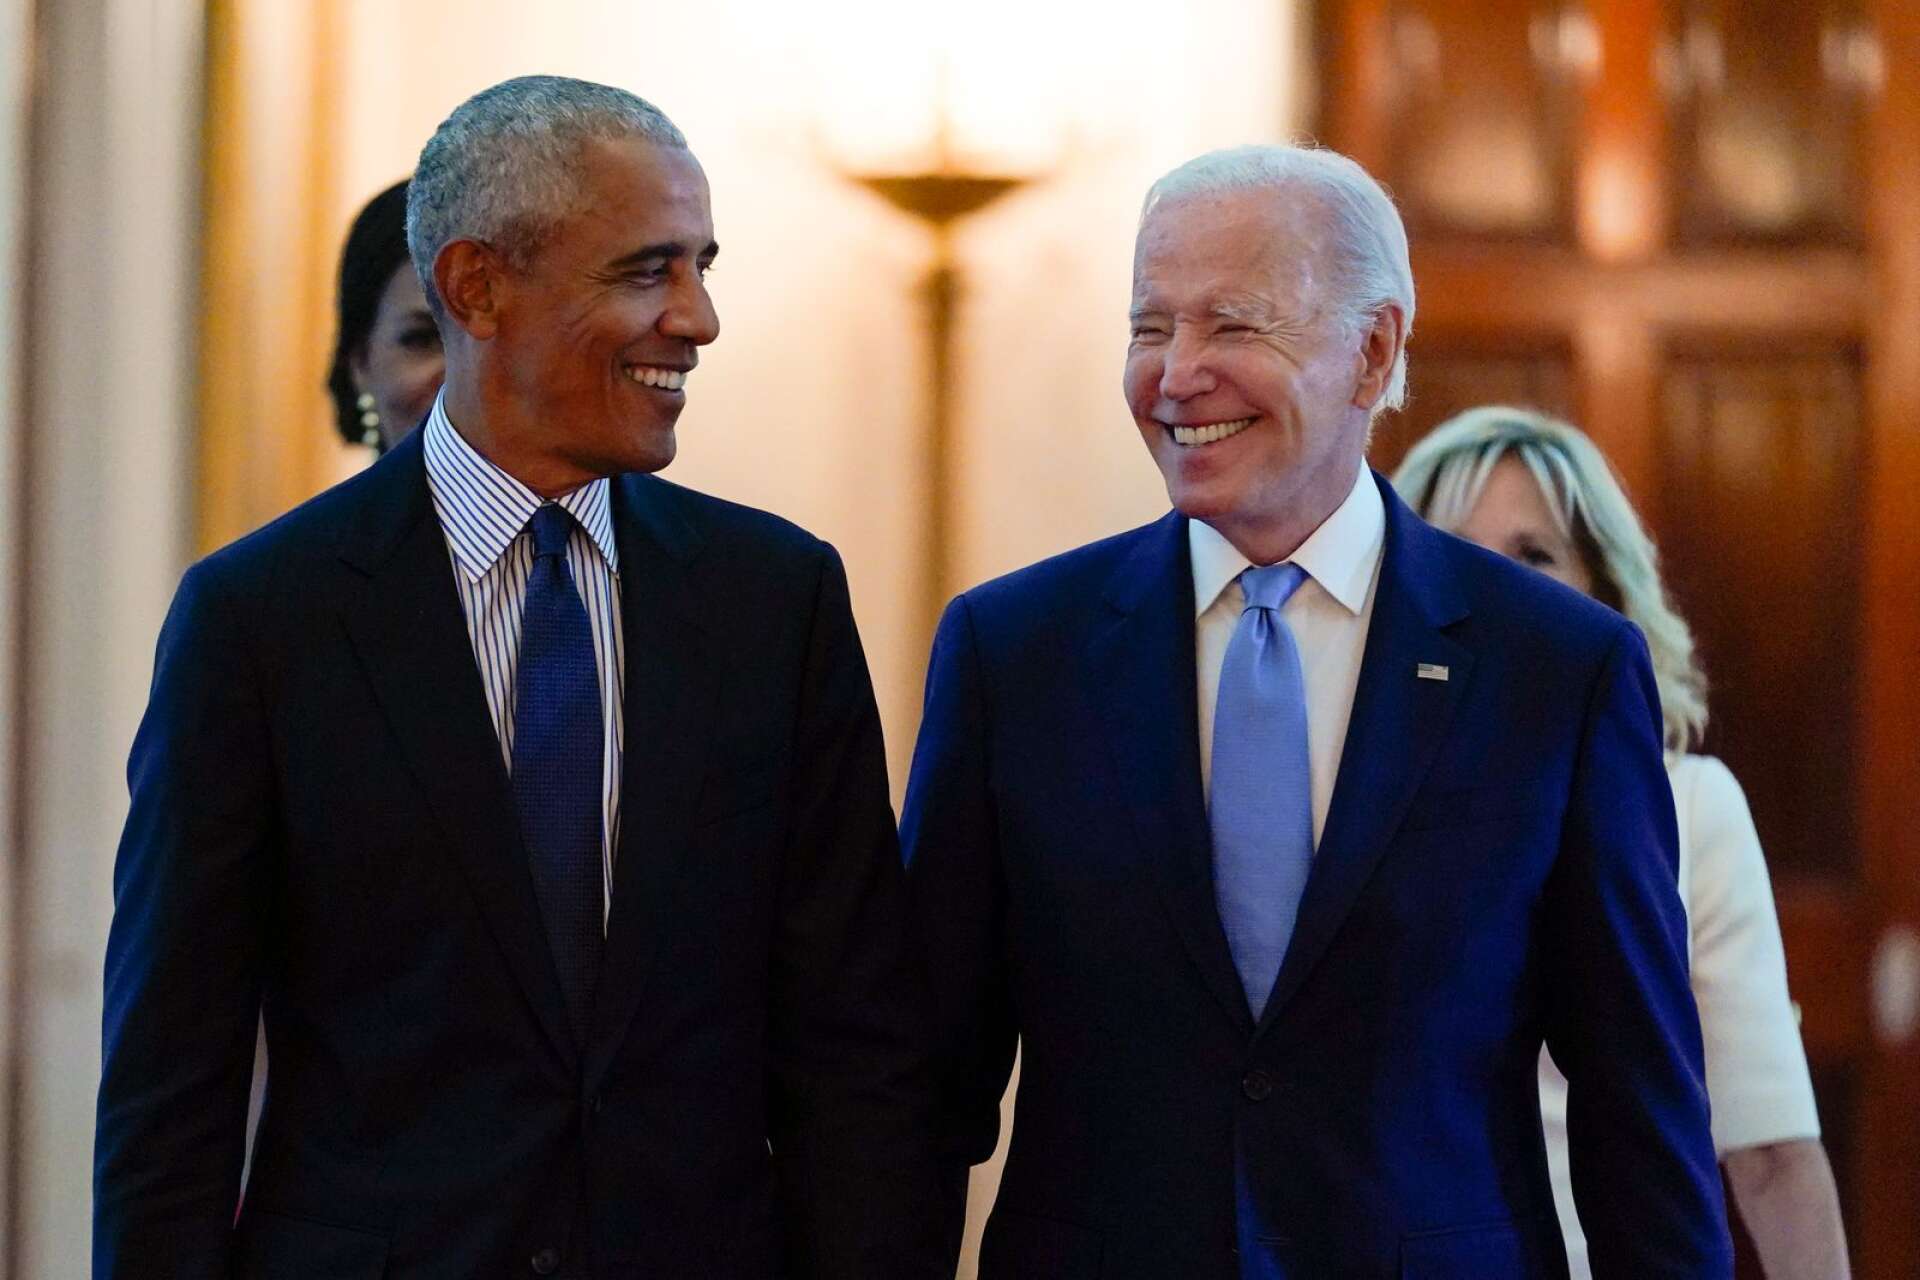 Den förre presidenten Barack Obama bredvid den nuvarande Joe Biden. Joe Biden var även vicepresident under Barack Obama ämbetsperiod.